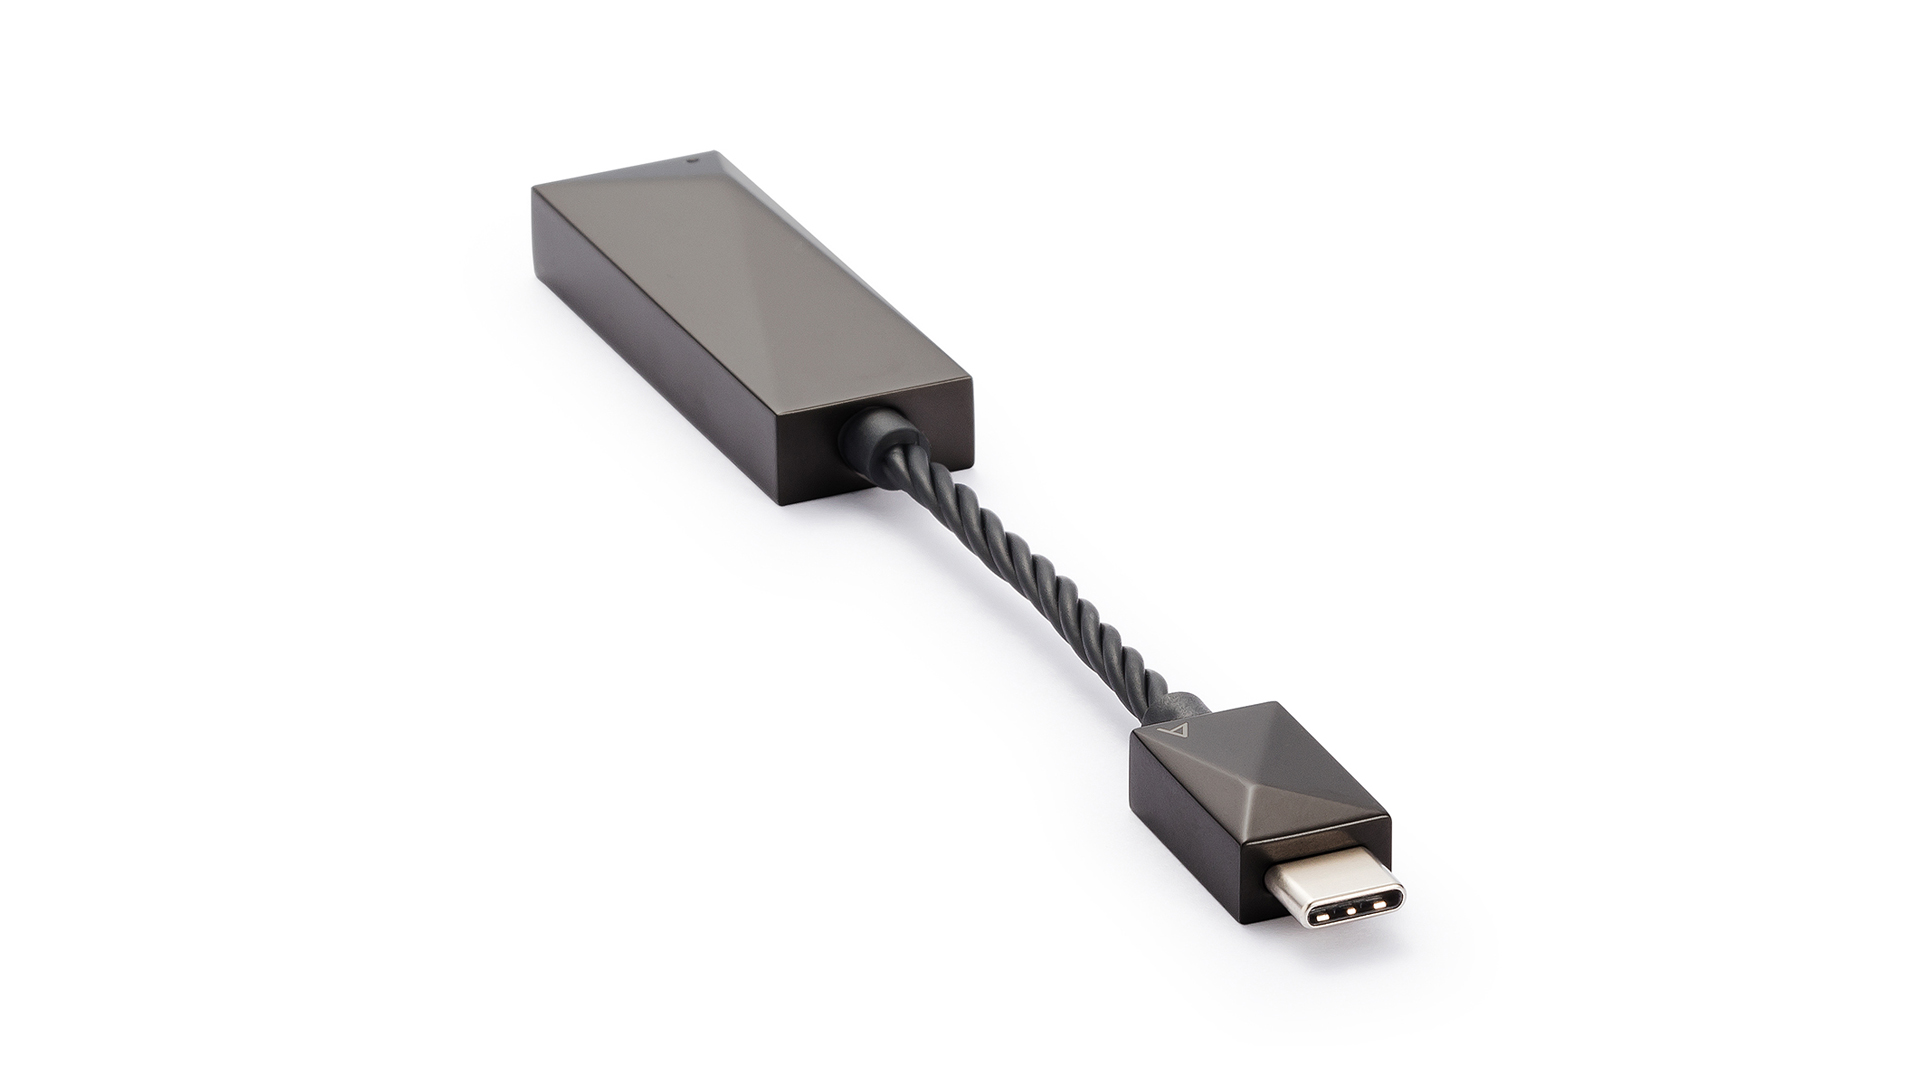 ESSential USB DAC Key Features